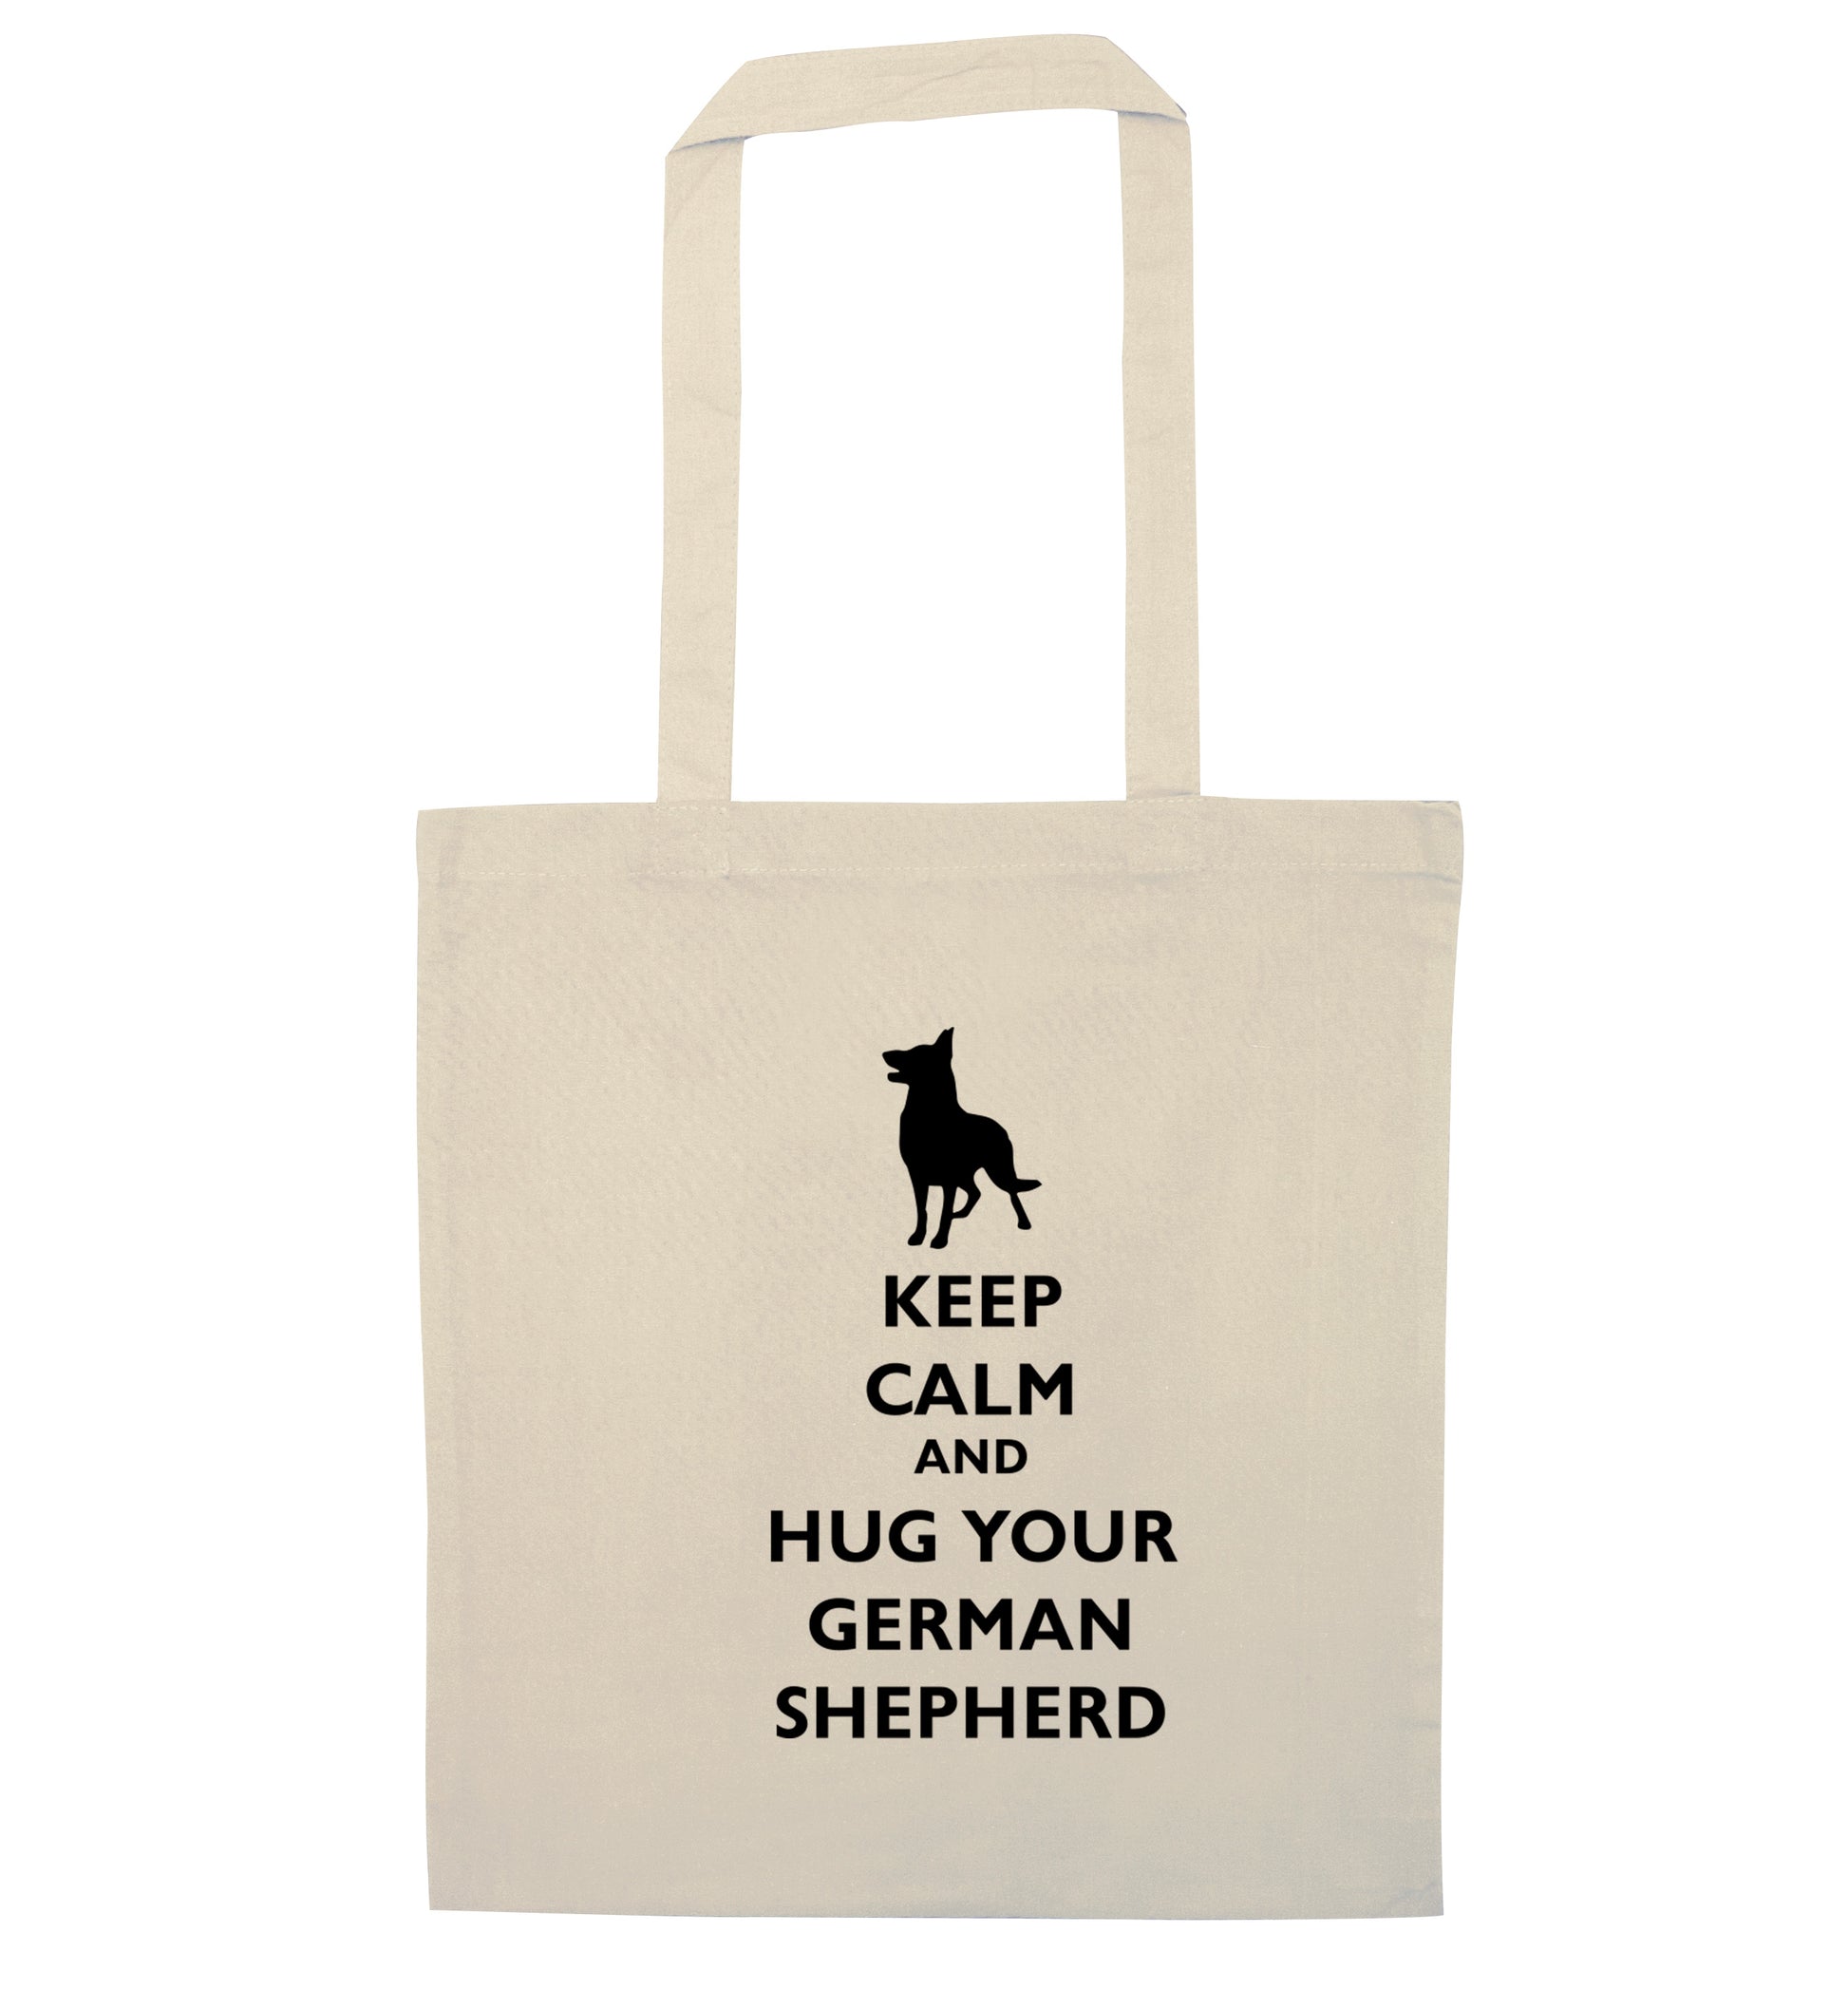 Keep calm and hug your german shepherd natural tote bag